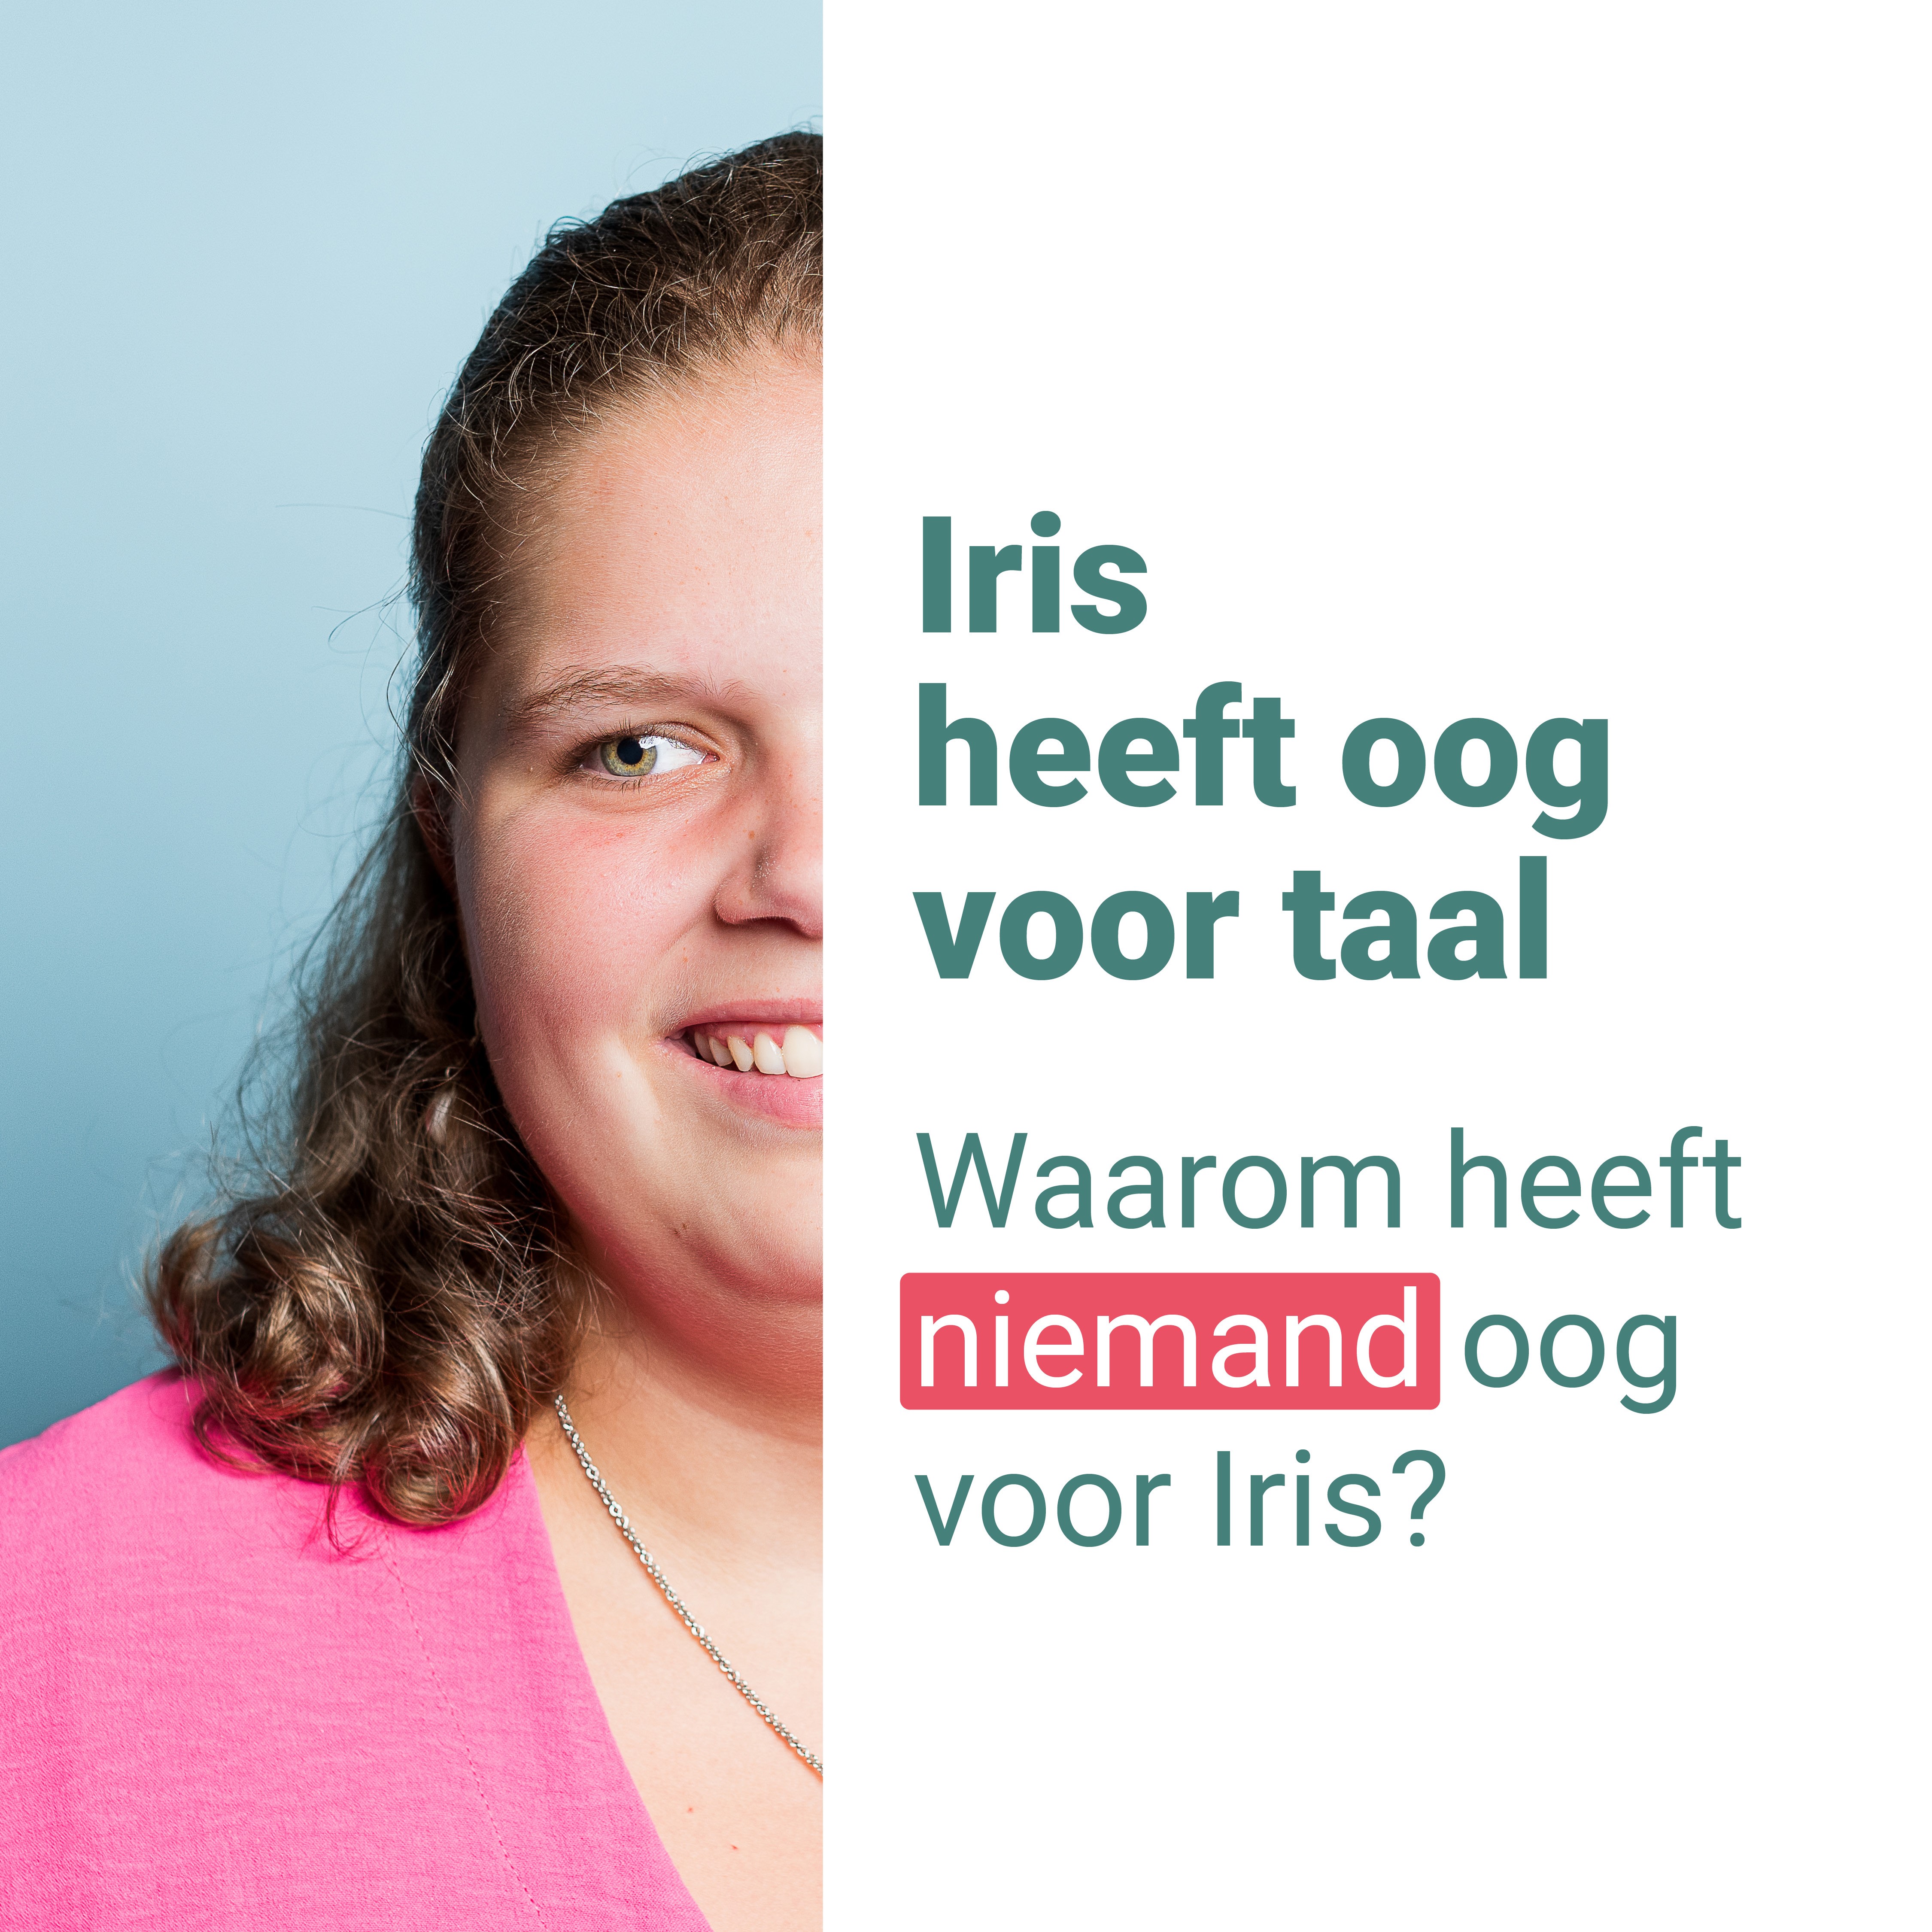 Campagnebeeld: Iris heeft oog voor taal, maar waarom heeft niemand oog voor Iris?